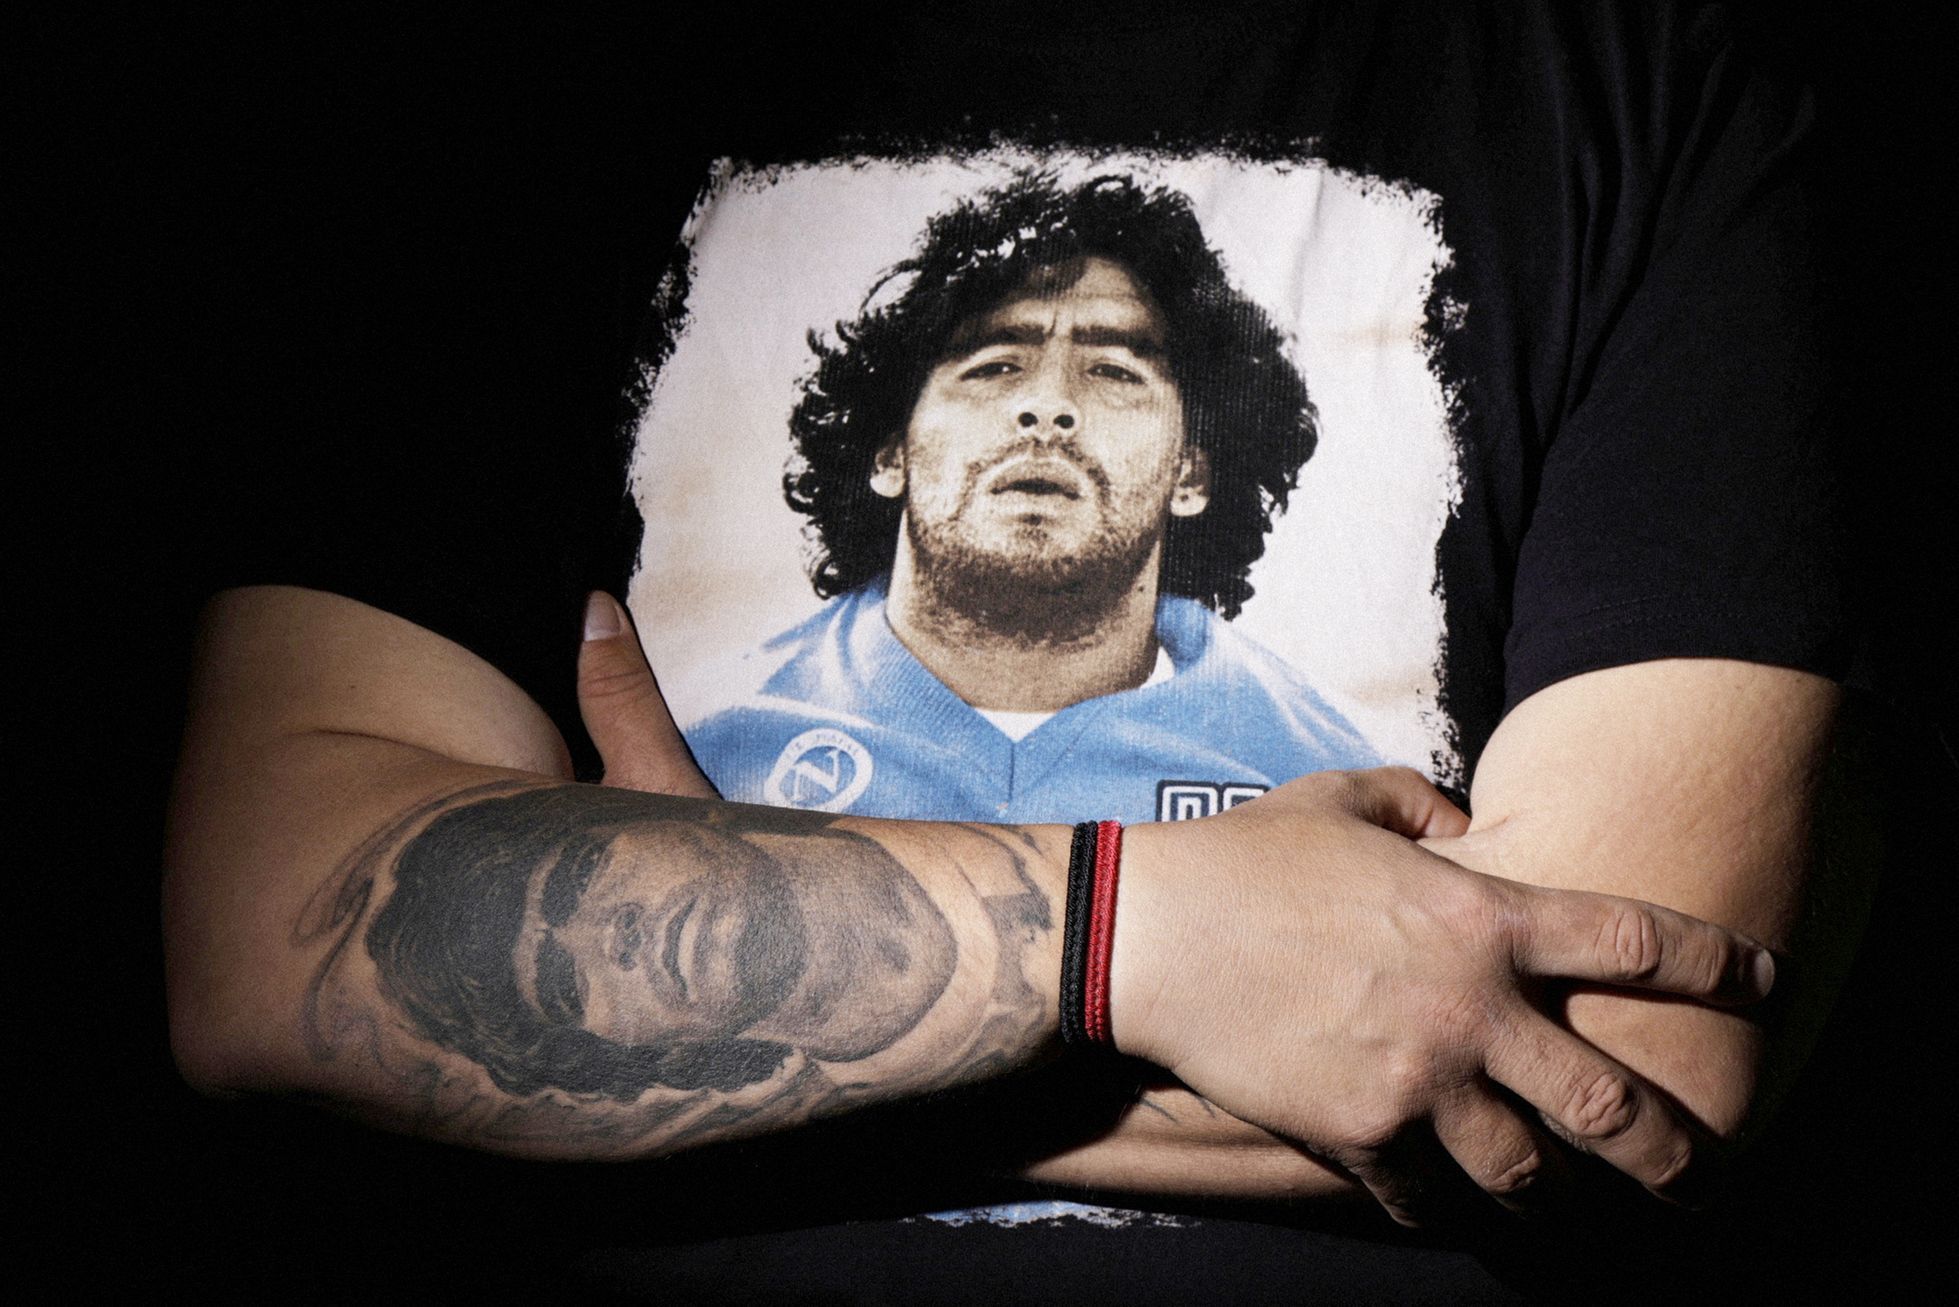 Fotogalerie / Tetováni s láskou k fotbalové ikoně. S těmito lidmi už zůstane Maradona navždy.